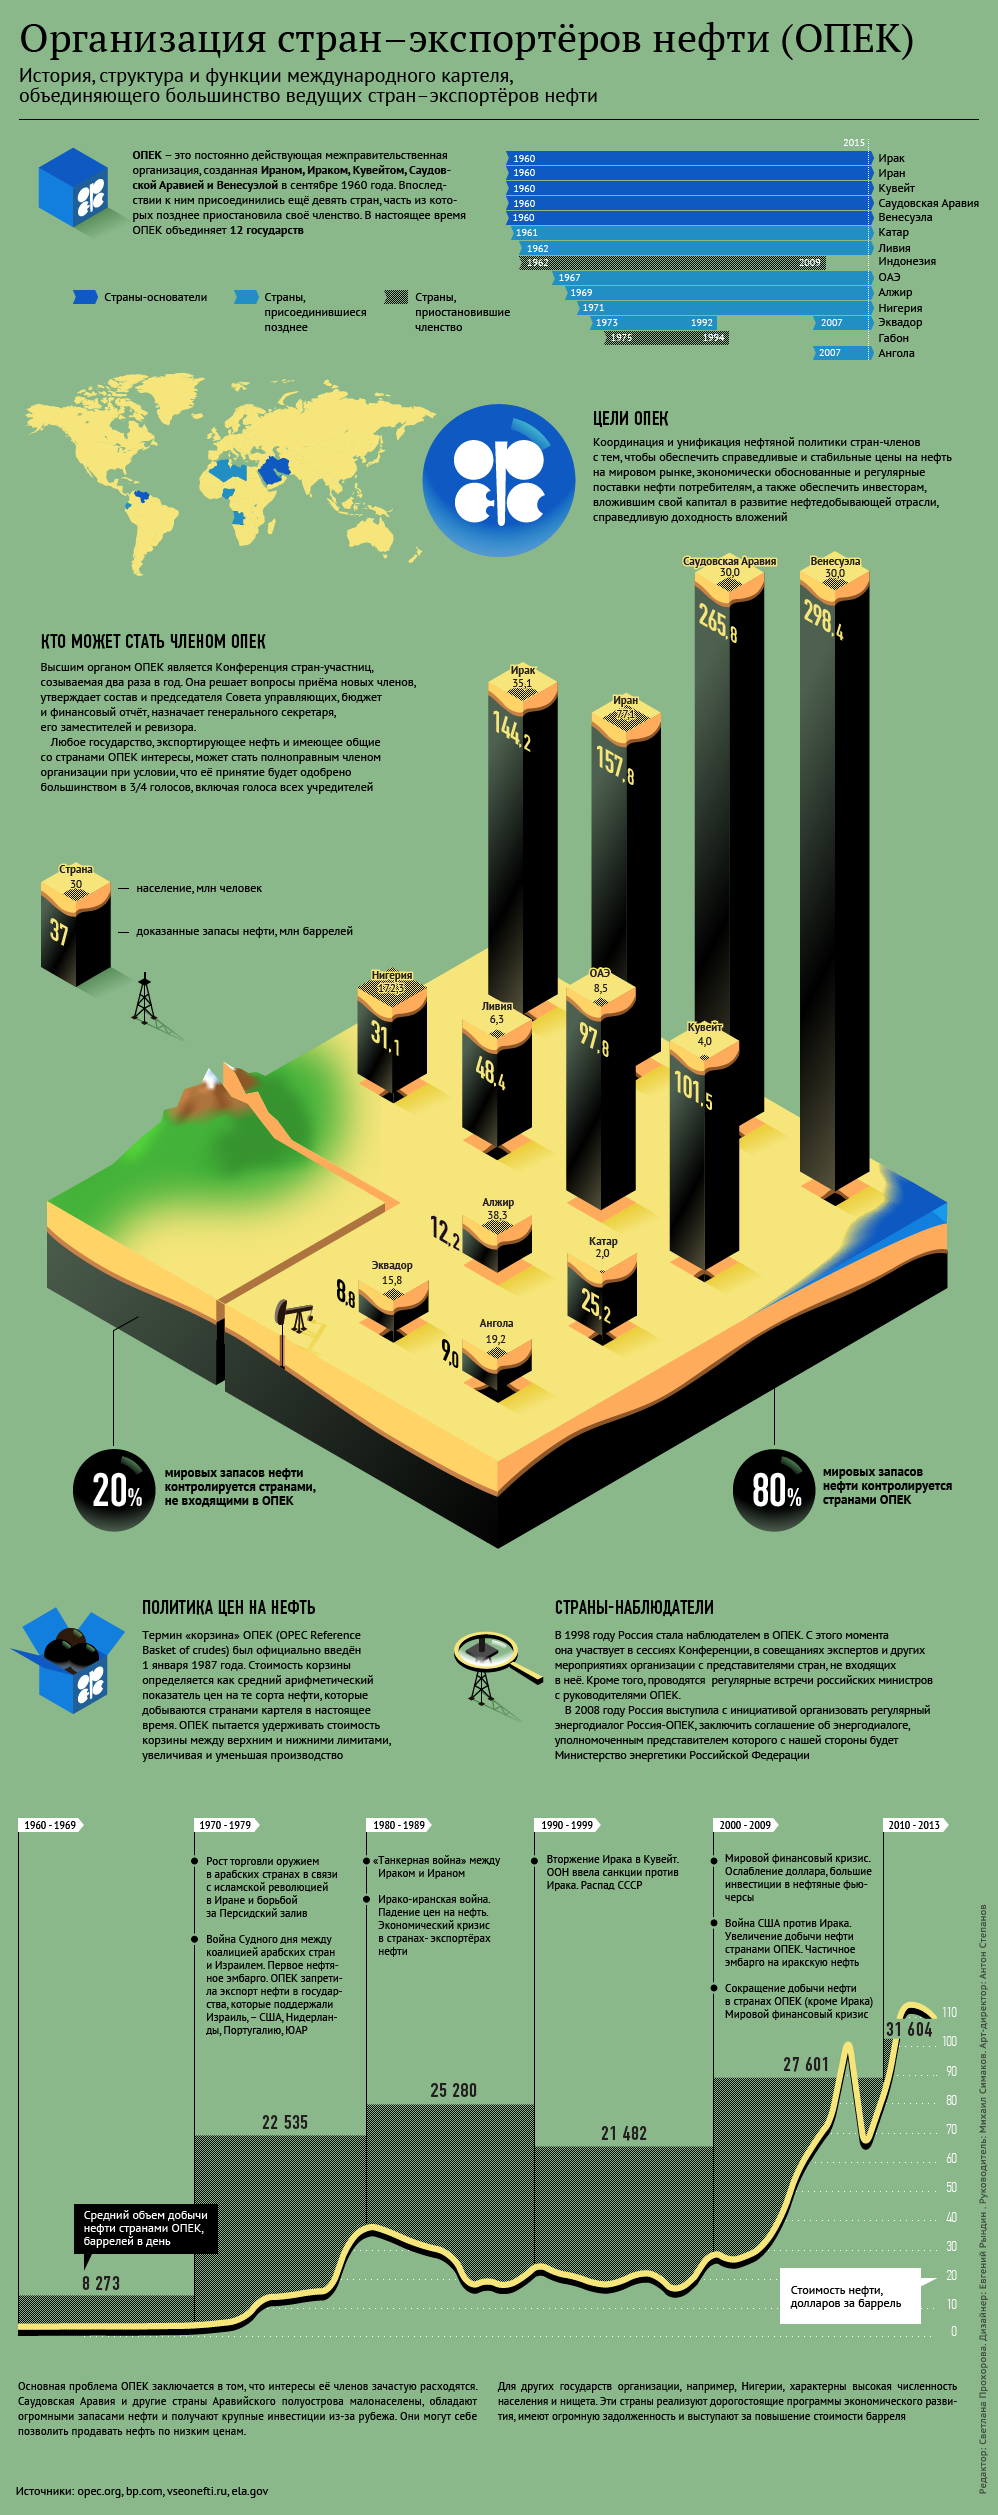 Организация стран–экспортеров нефти (ОПЕК). Инфографика